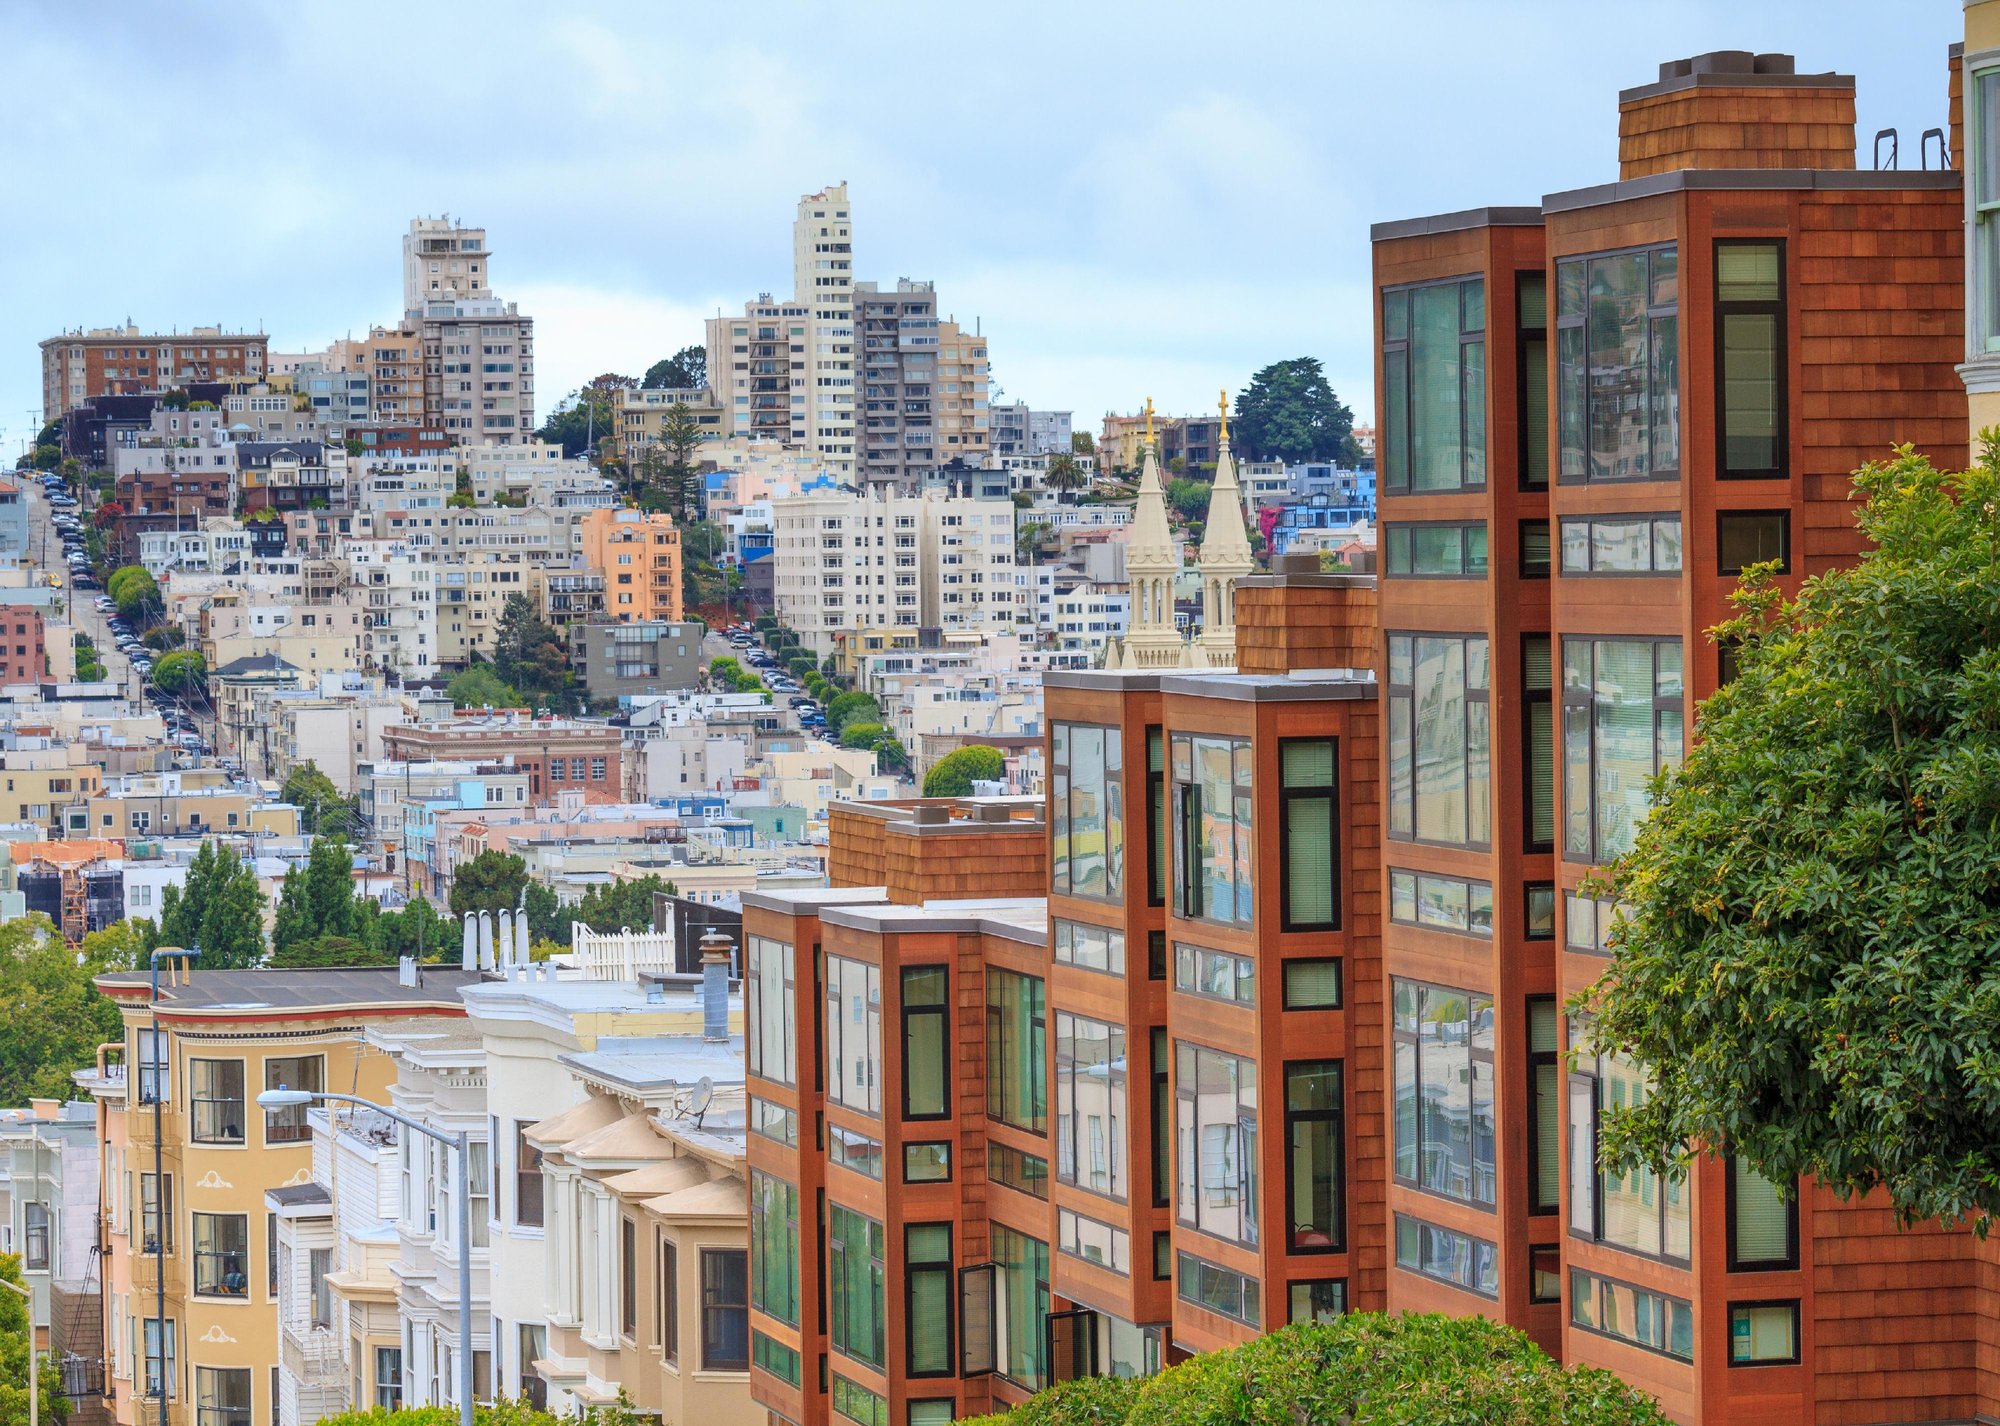 “San Francisco condos in city area” - Source: Bertl123 // Shutterstock